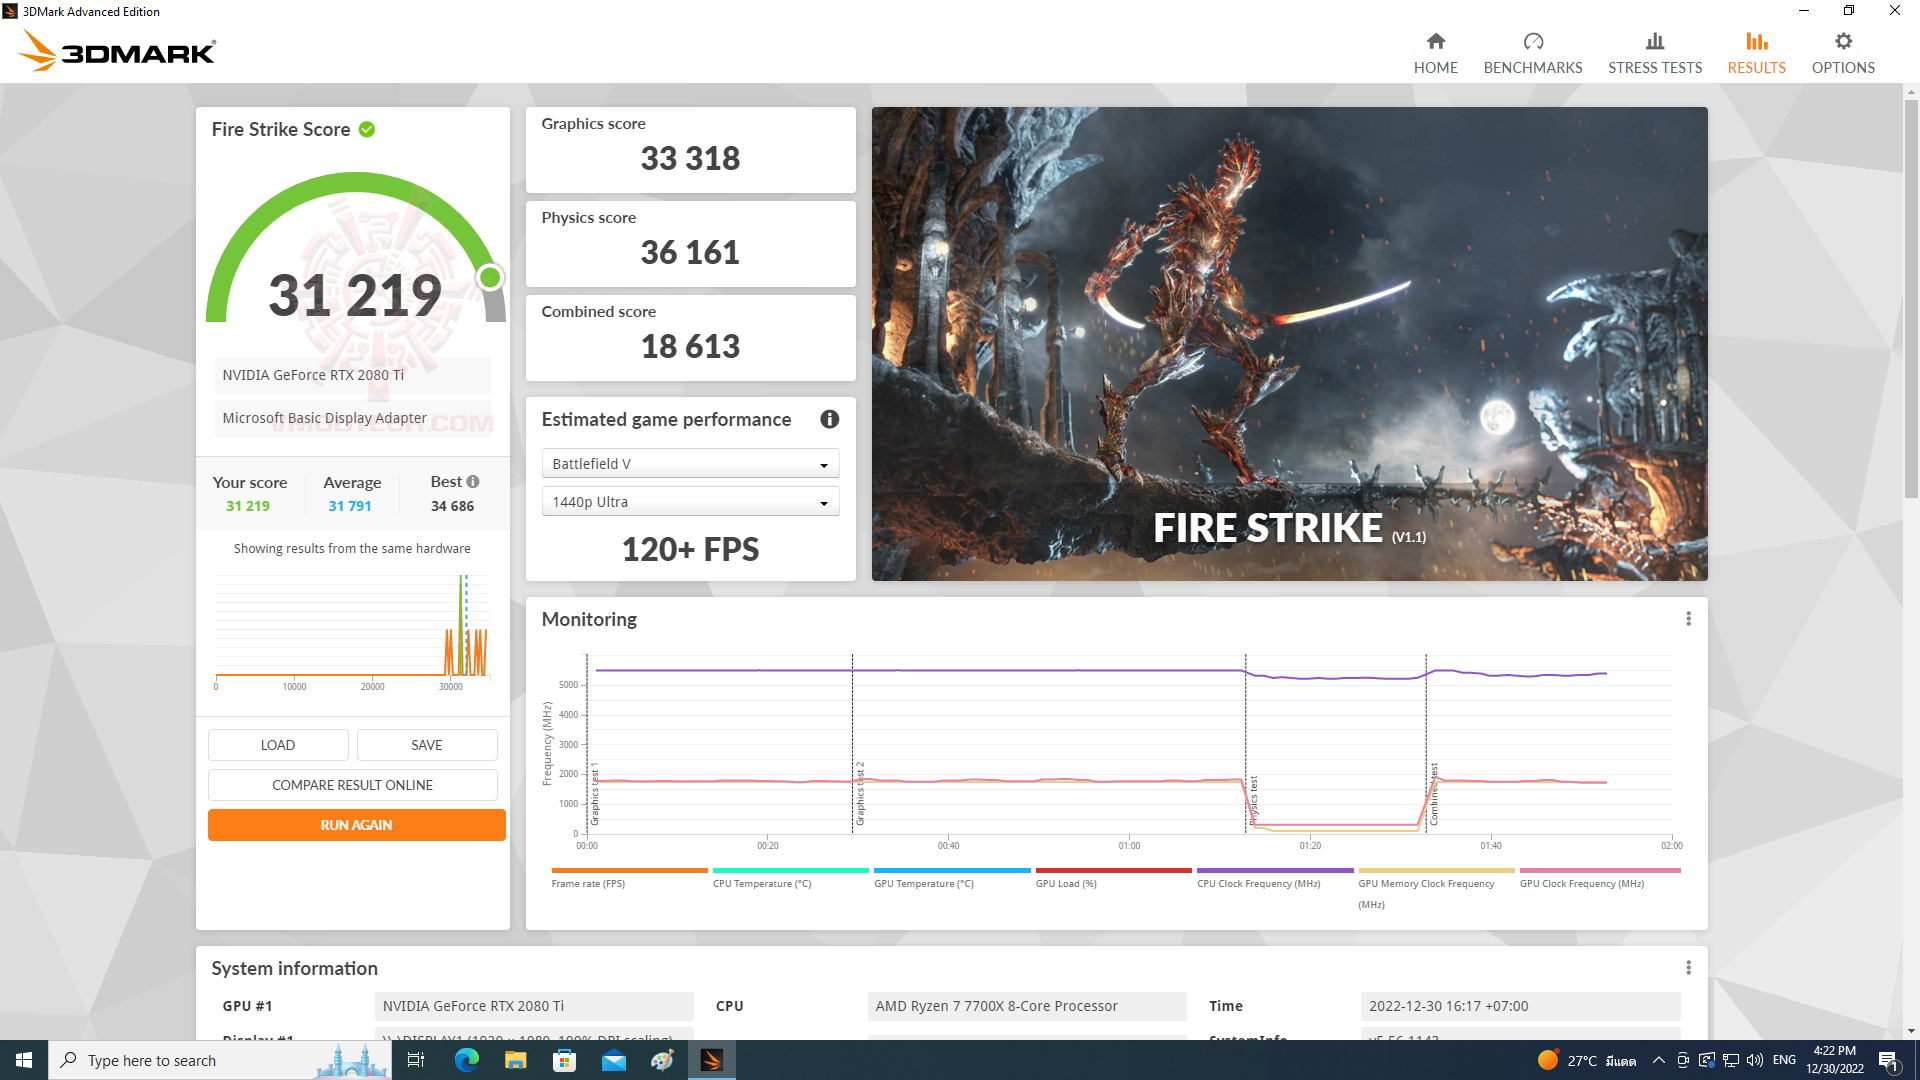 fire AMD RYZEN 7 7700X PROCESSOR REVIEW